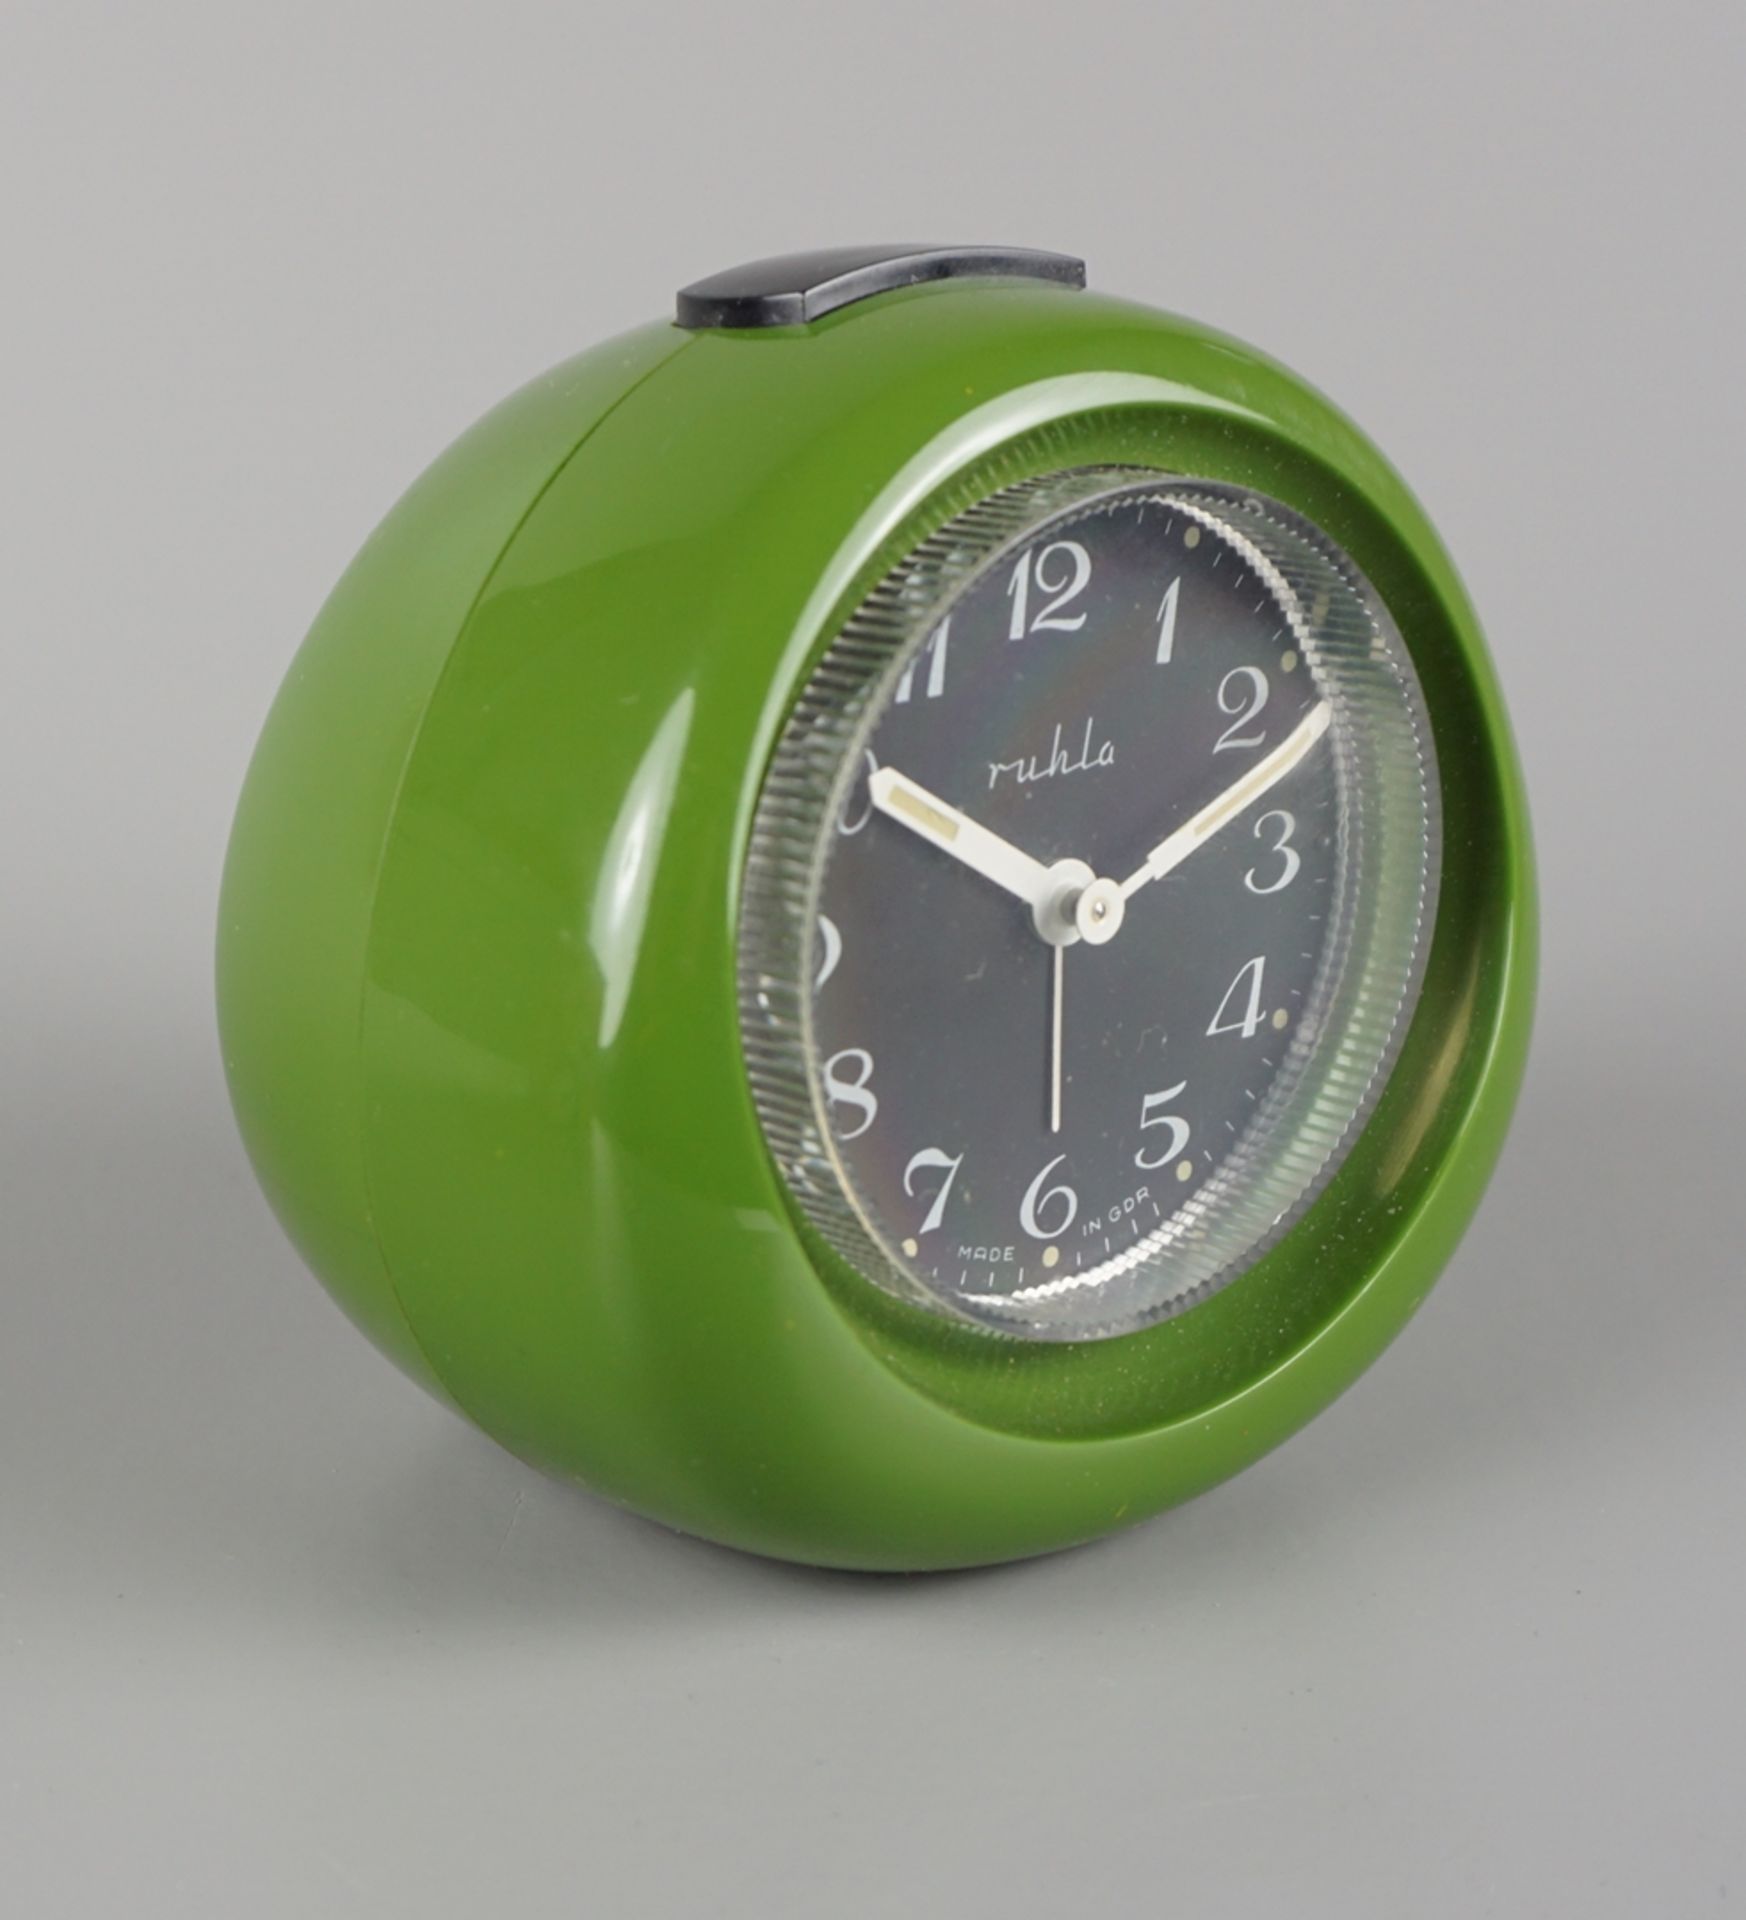 Alarm clock, Ruhla, in original packing - Image 2 of 3